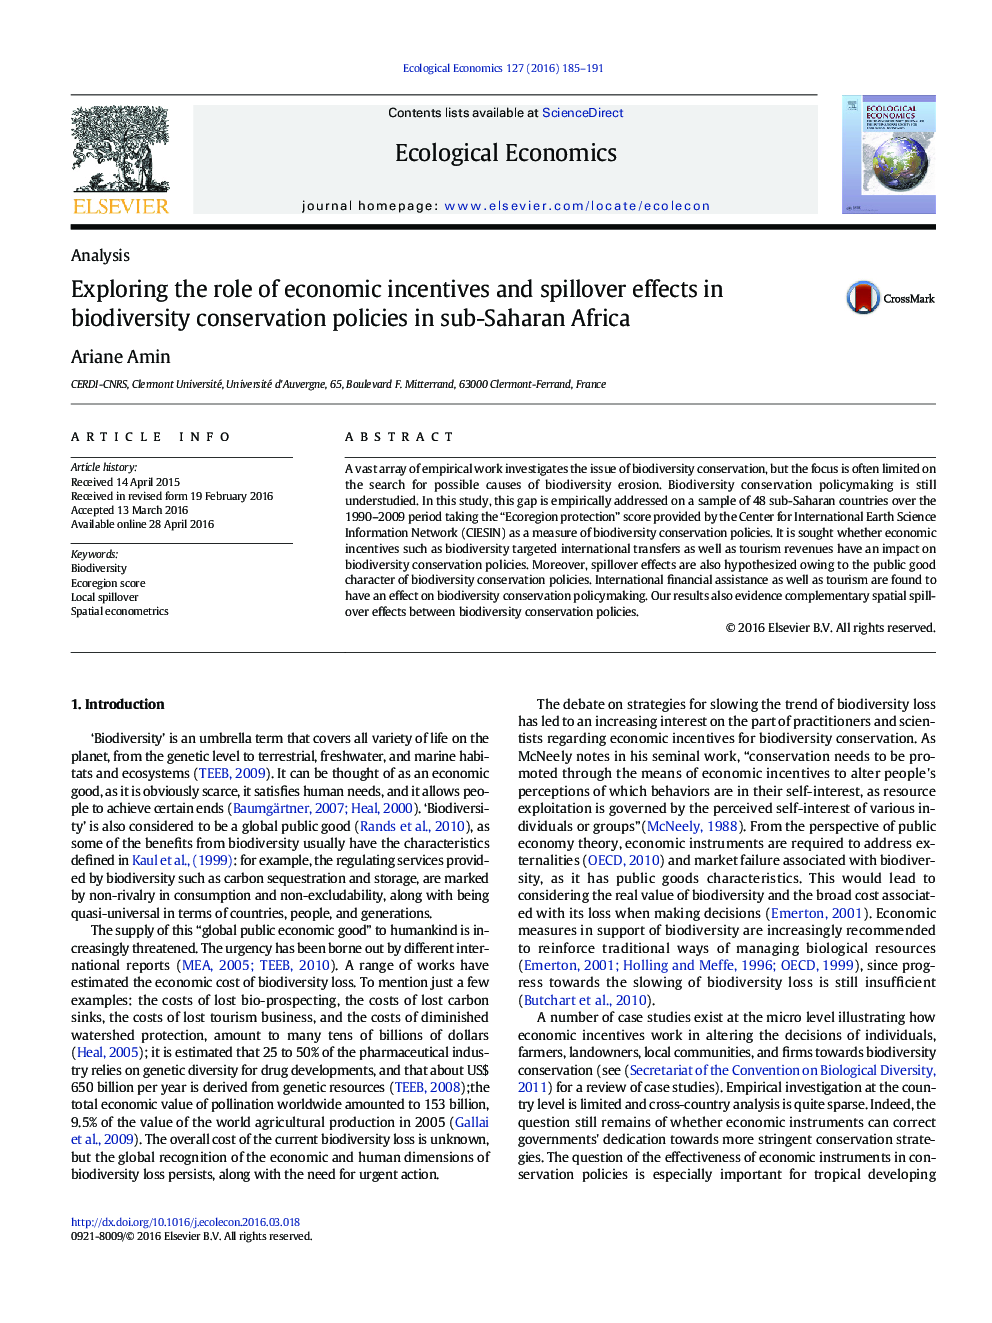 بررسی نقش انگیزه های اقتصادی و تاثیرات ناگهانی در سیاست های حفاظت از تنوع زیستی در کشورهای جنوب صحرای آفریقا 